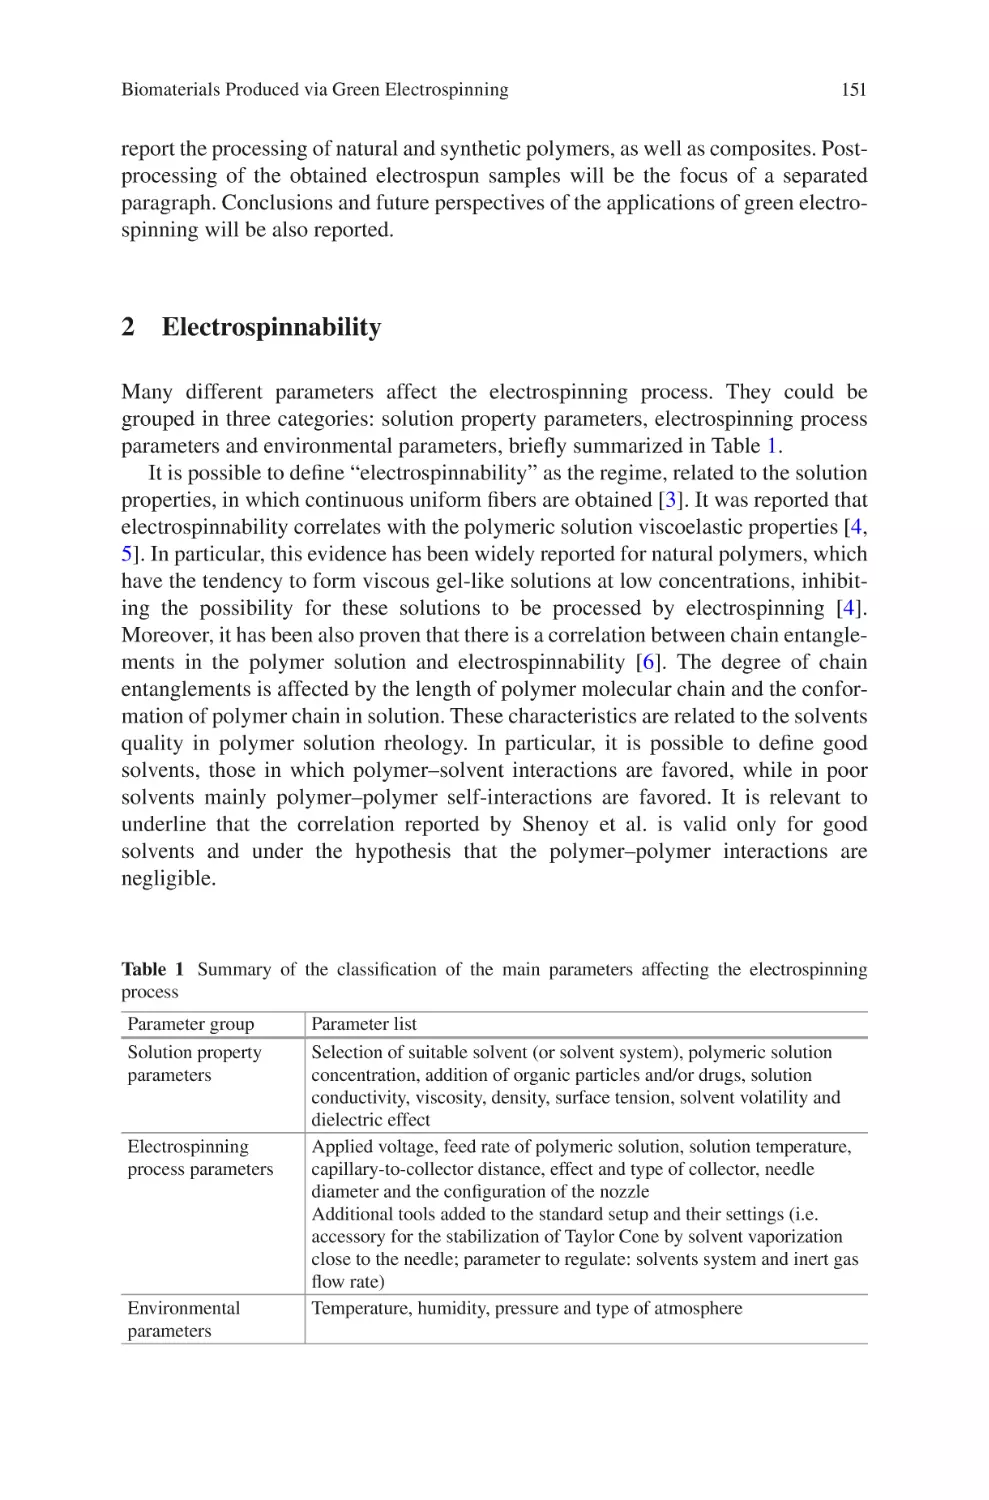 2 Electrospinnability